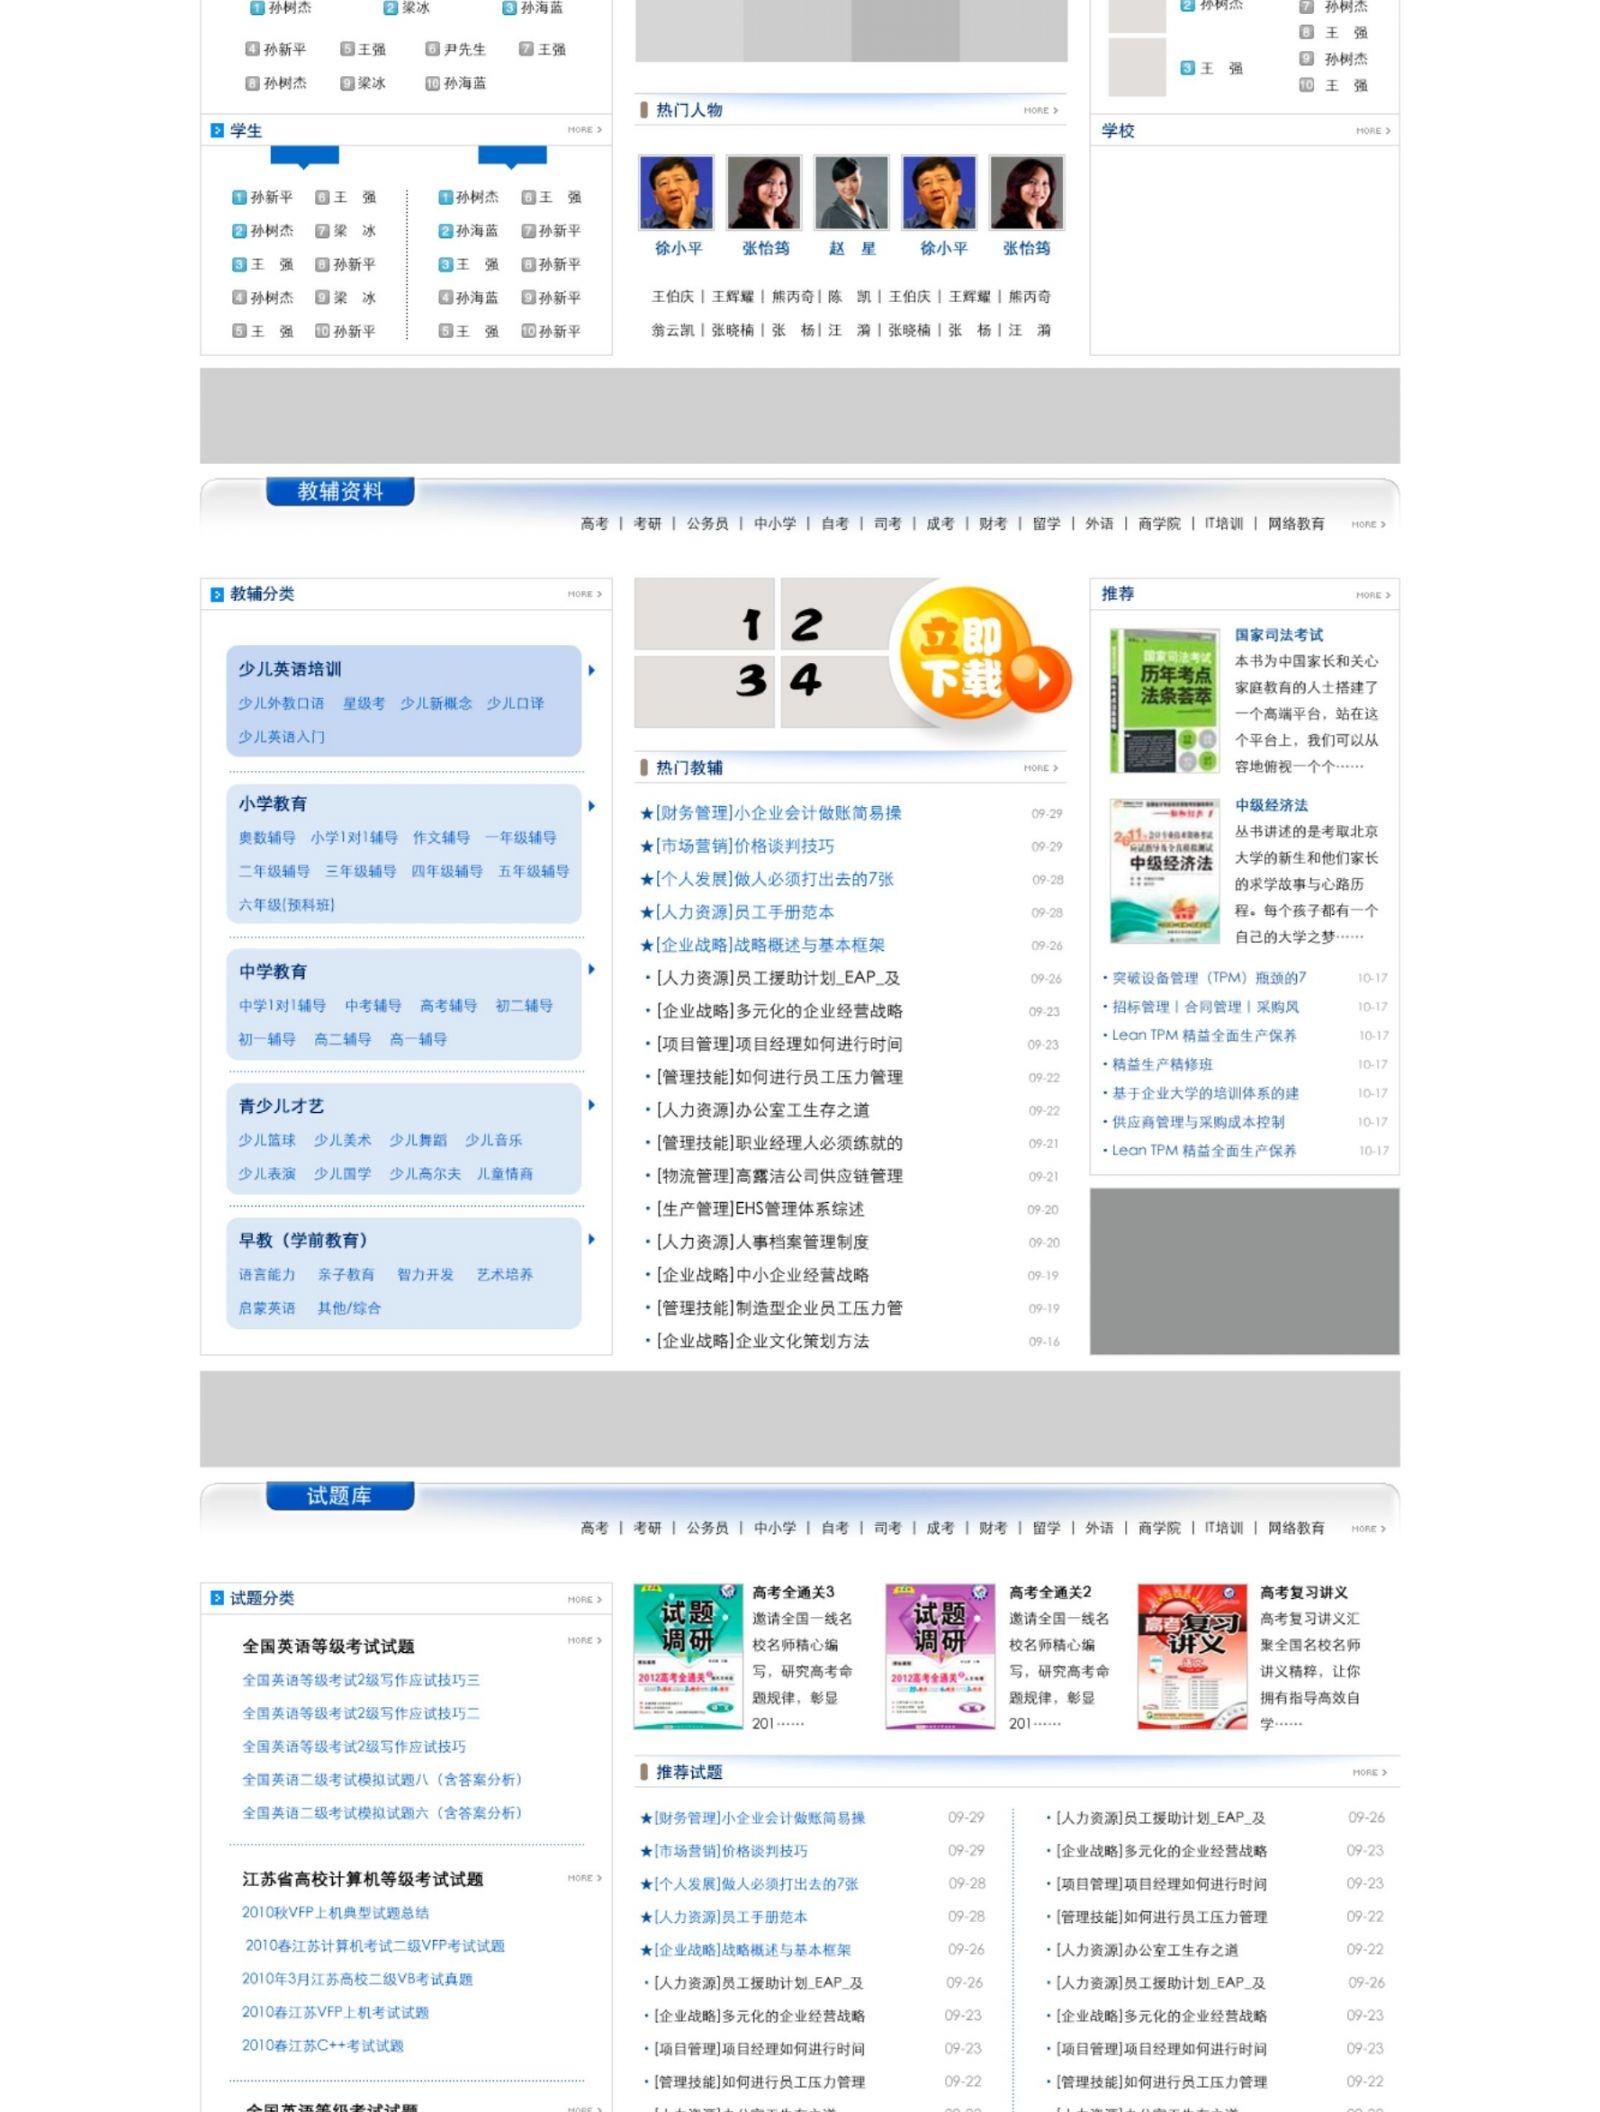 中国情景教育网站首页设计稿